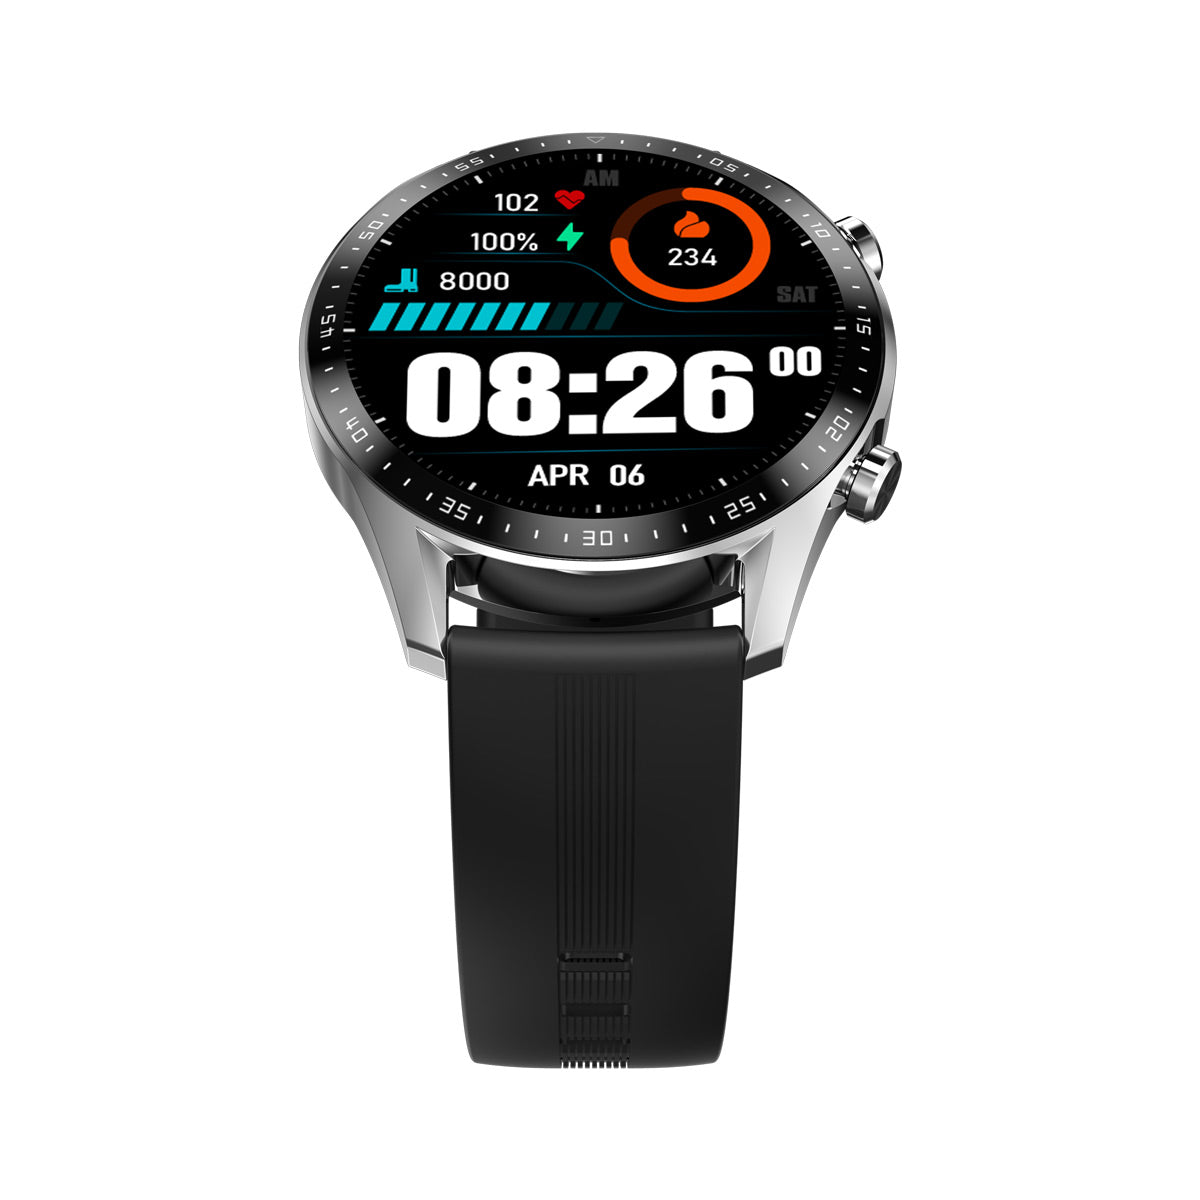 Blackview X1 Pro 10-meter Water-resistant Sports Smart Watch